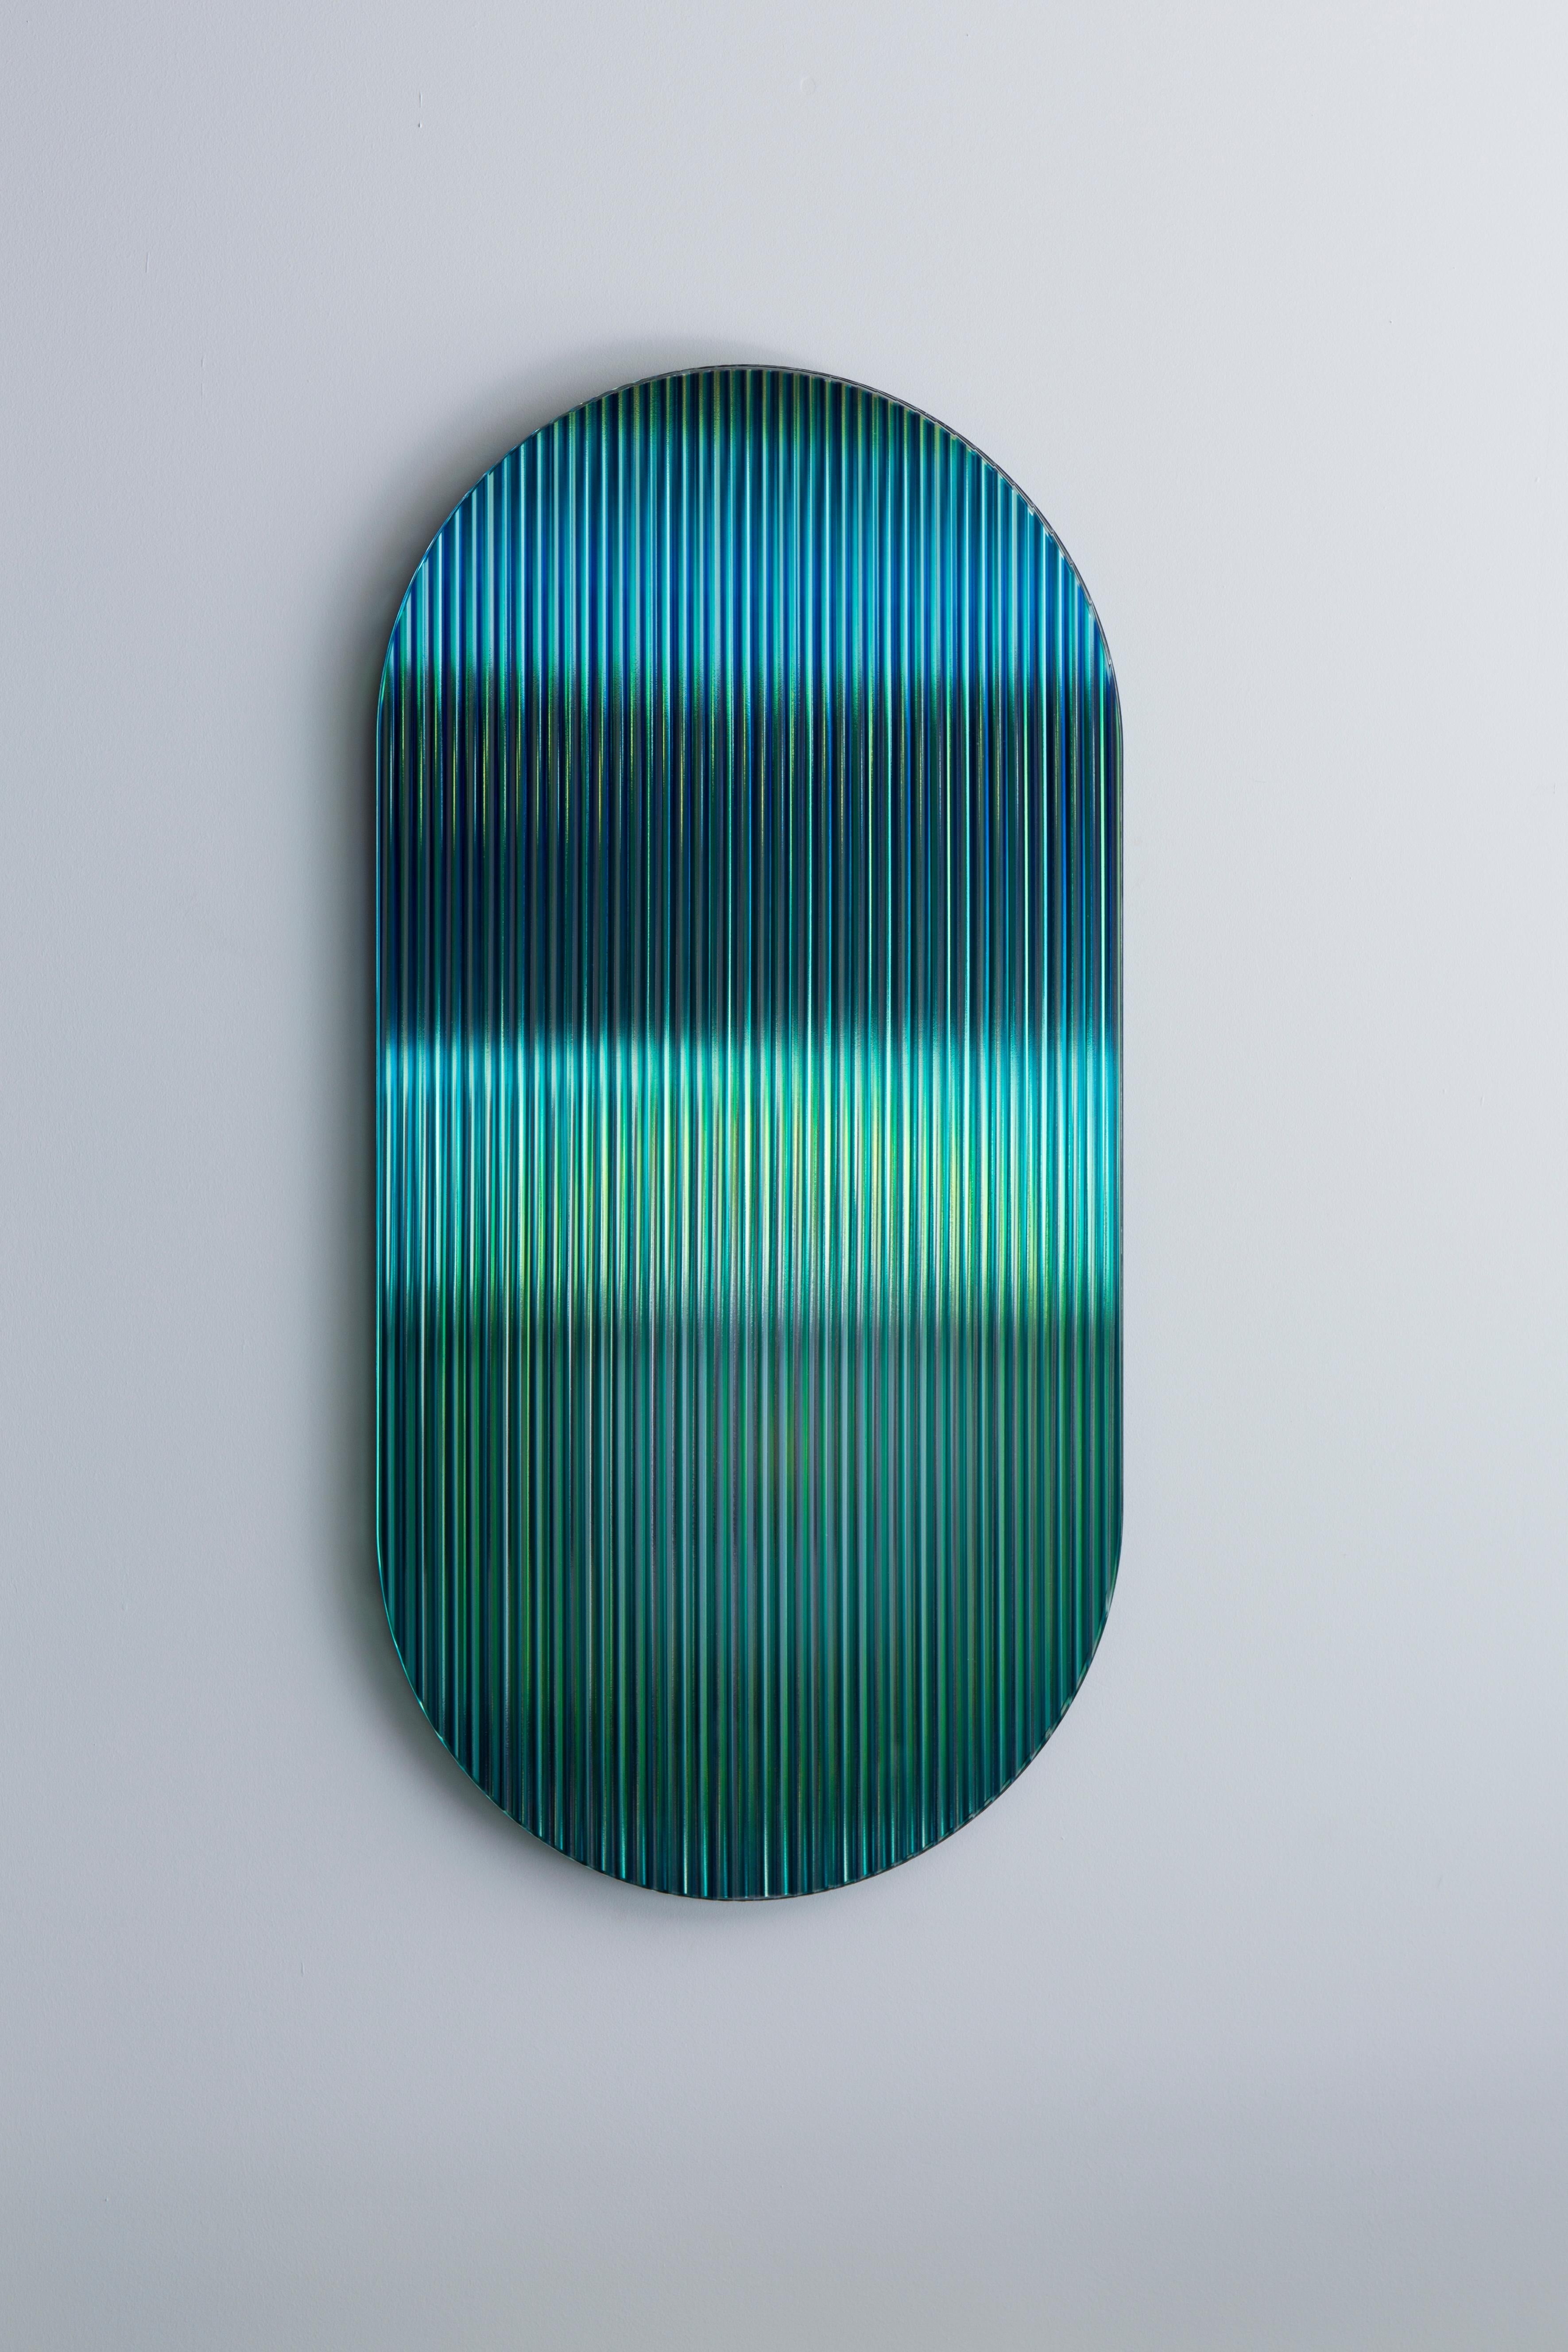 Color Shift Reflektierendes Glaswandpaneel Klein, Trichroic Emerald, von Rive Roshan (Europäisch) im Angebot